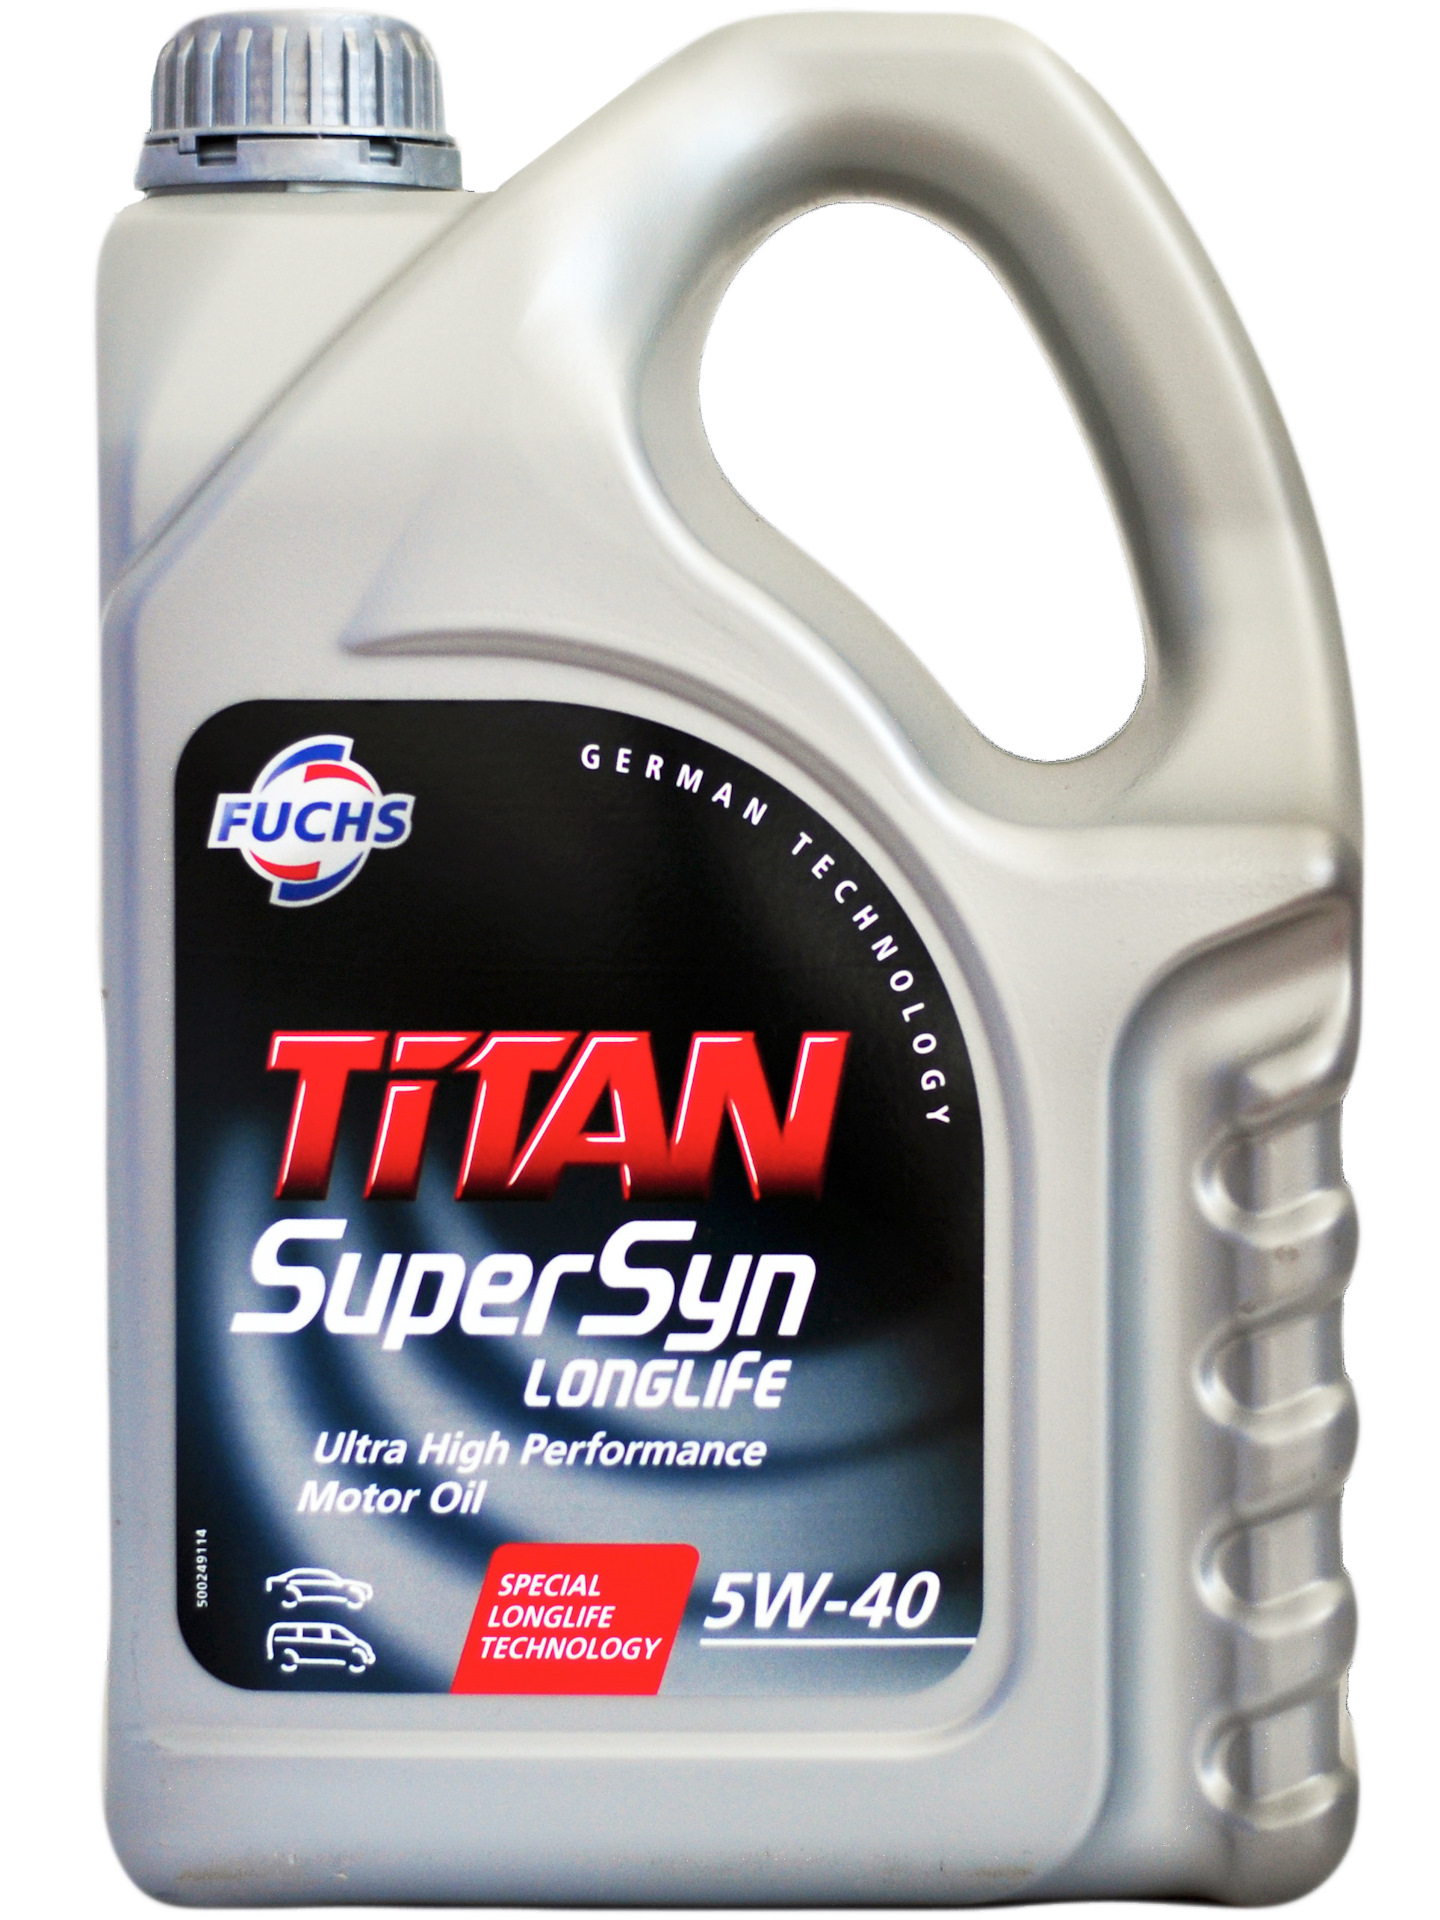 TITAN SUPERSYN LONGLIFE Fuchs 600721954